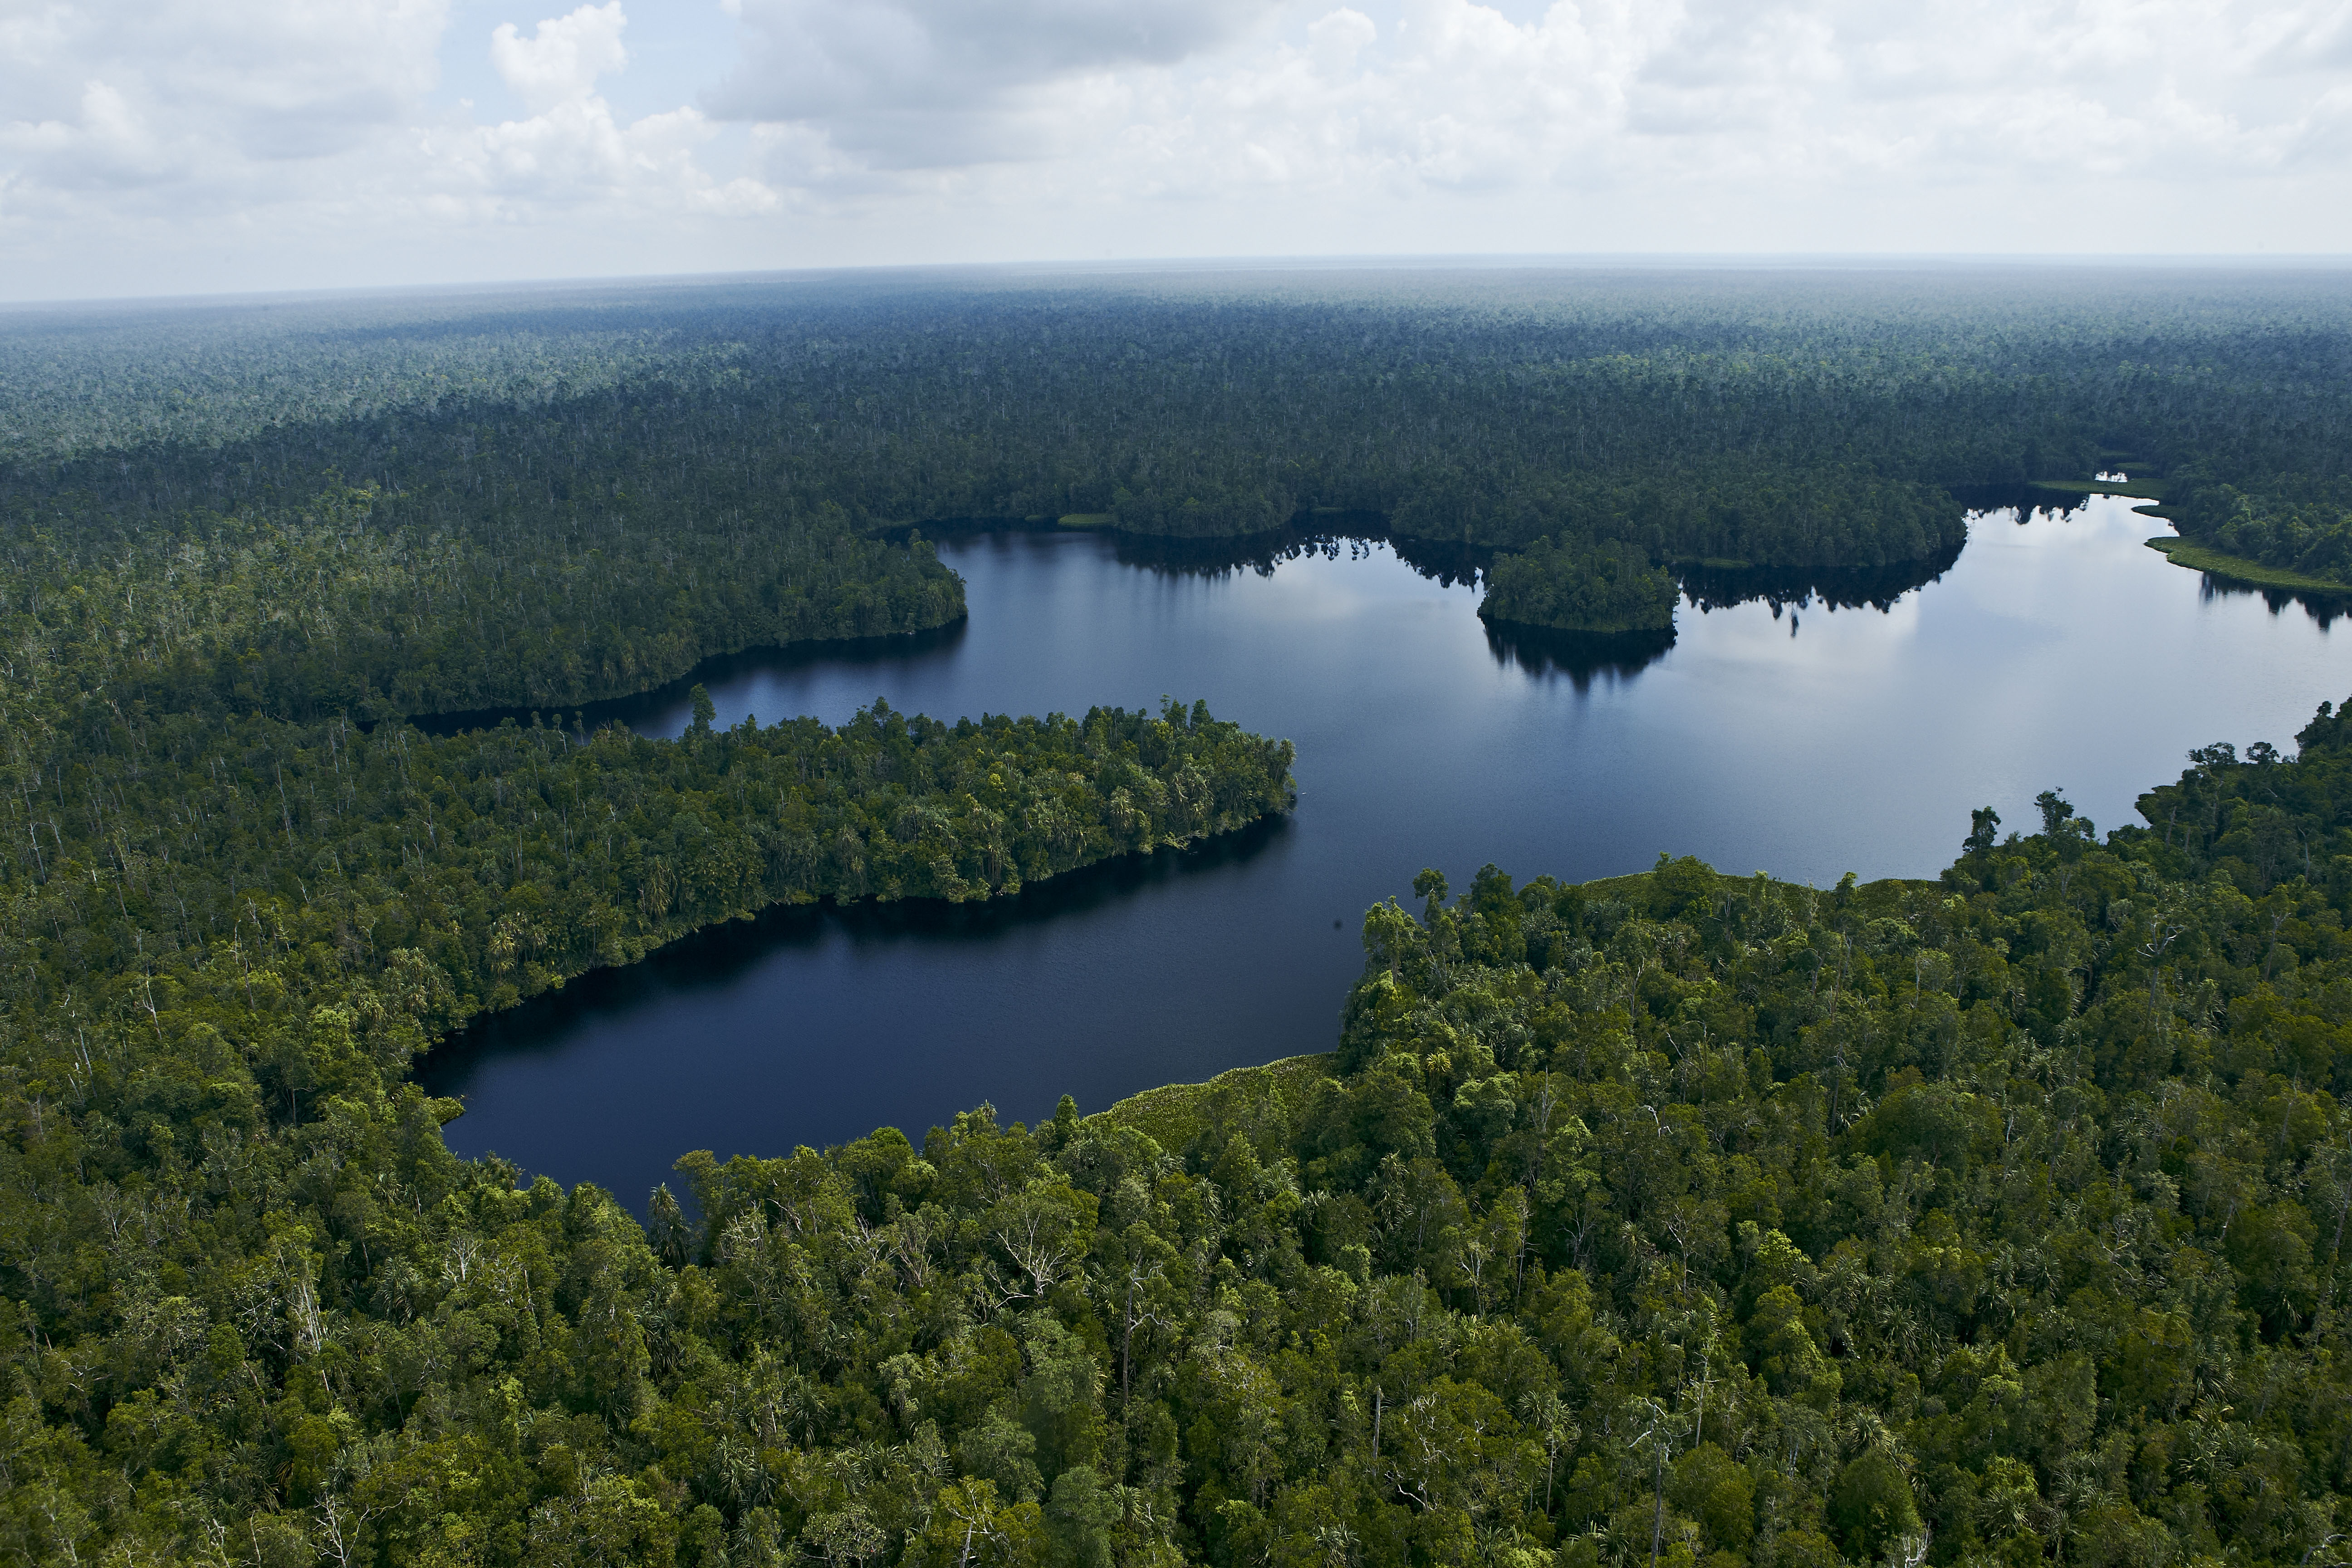 Restorasi Ekosistem Riau (RER) diluncurkan pada tahun 2013 untuk melindungi hutan gambut yang penting secara ekologis di Semenanjung Kampar, Riau, Indonesia.